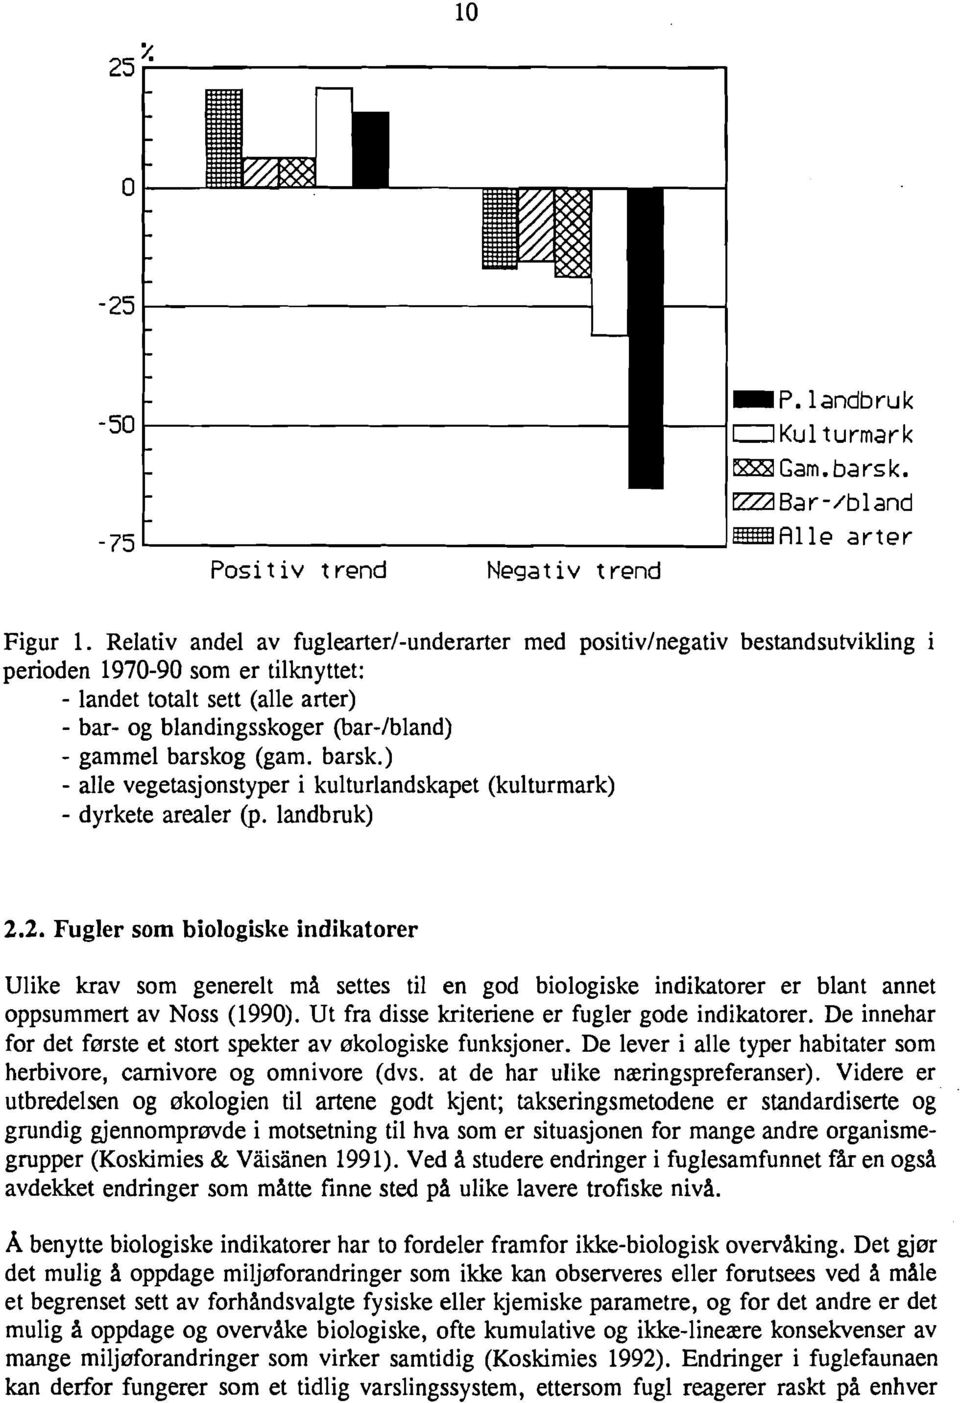 Relativ andel av fuglearter/-underarter med positiv/negativ bestandsutvikling i perioden 1970-90 som er tilknyttet: - landet totalt sett (alle arter) - bar- og blandingsskoger (bar-/bland) - gammel